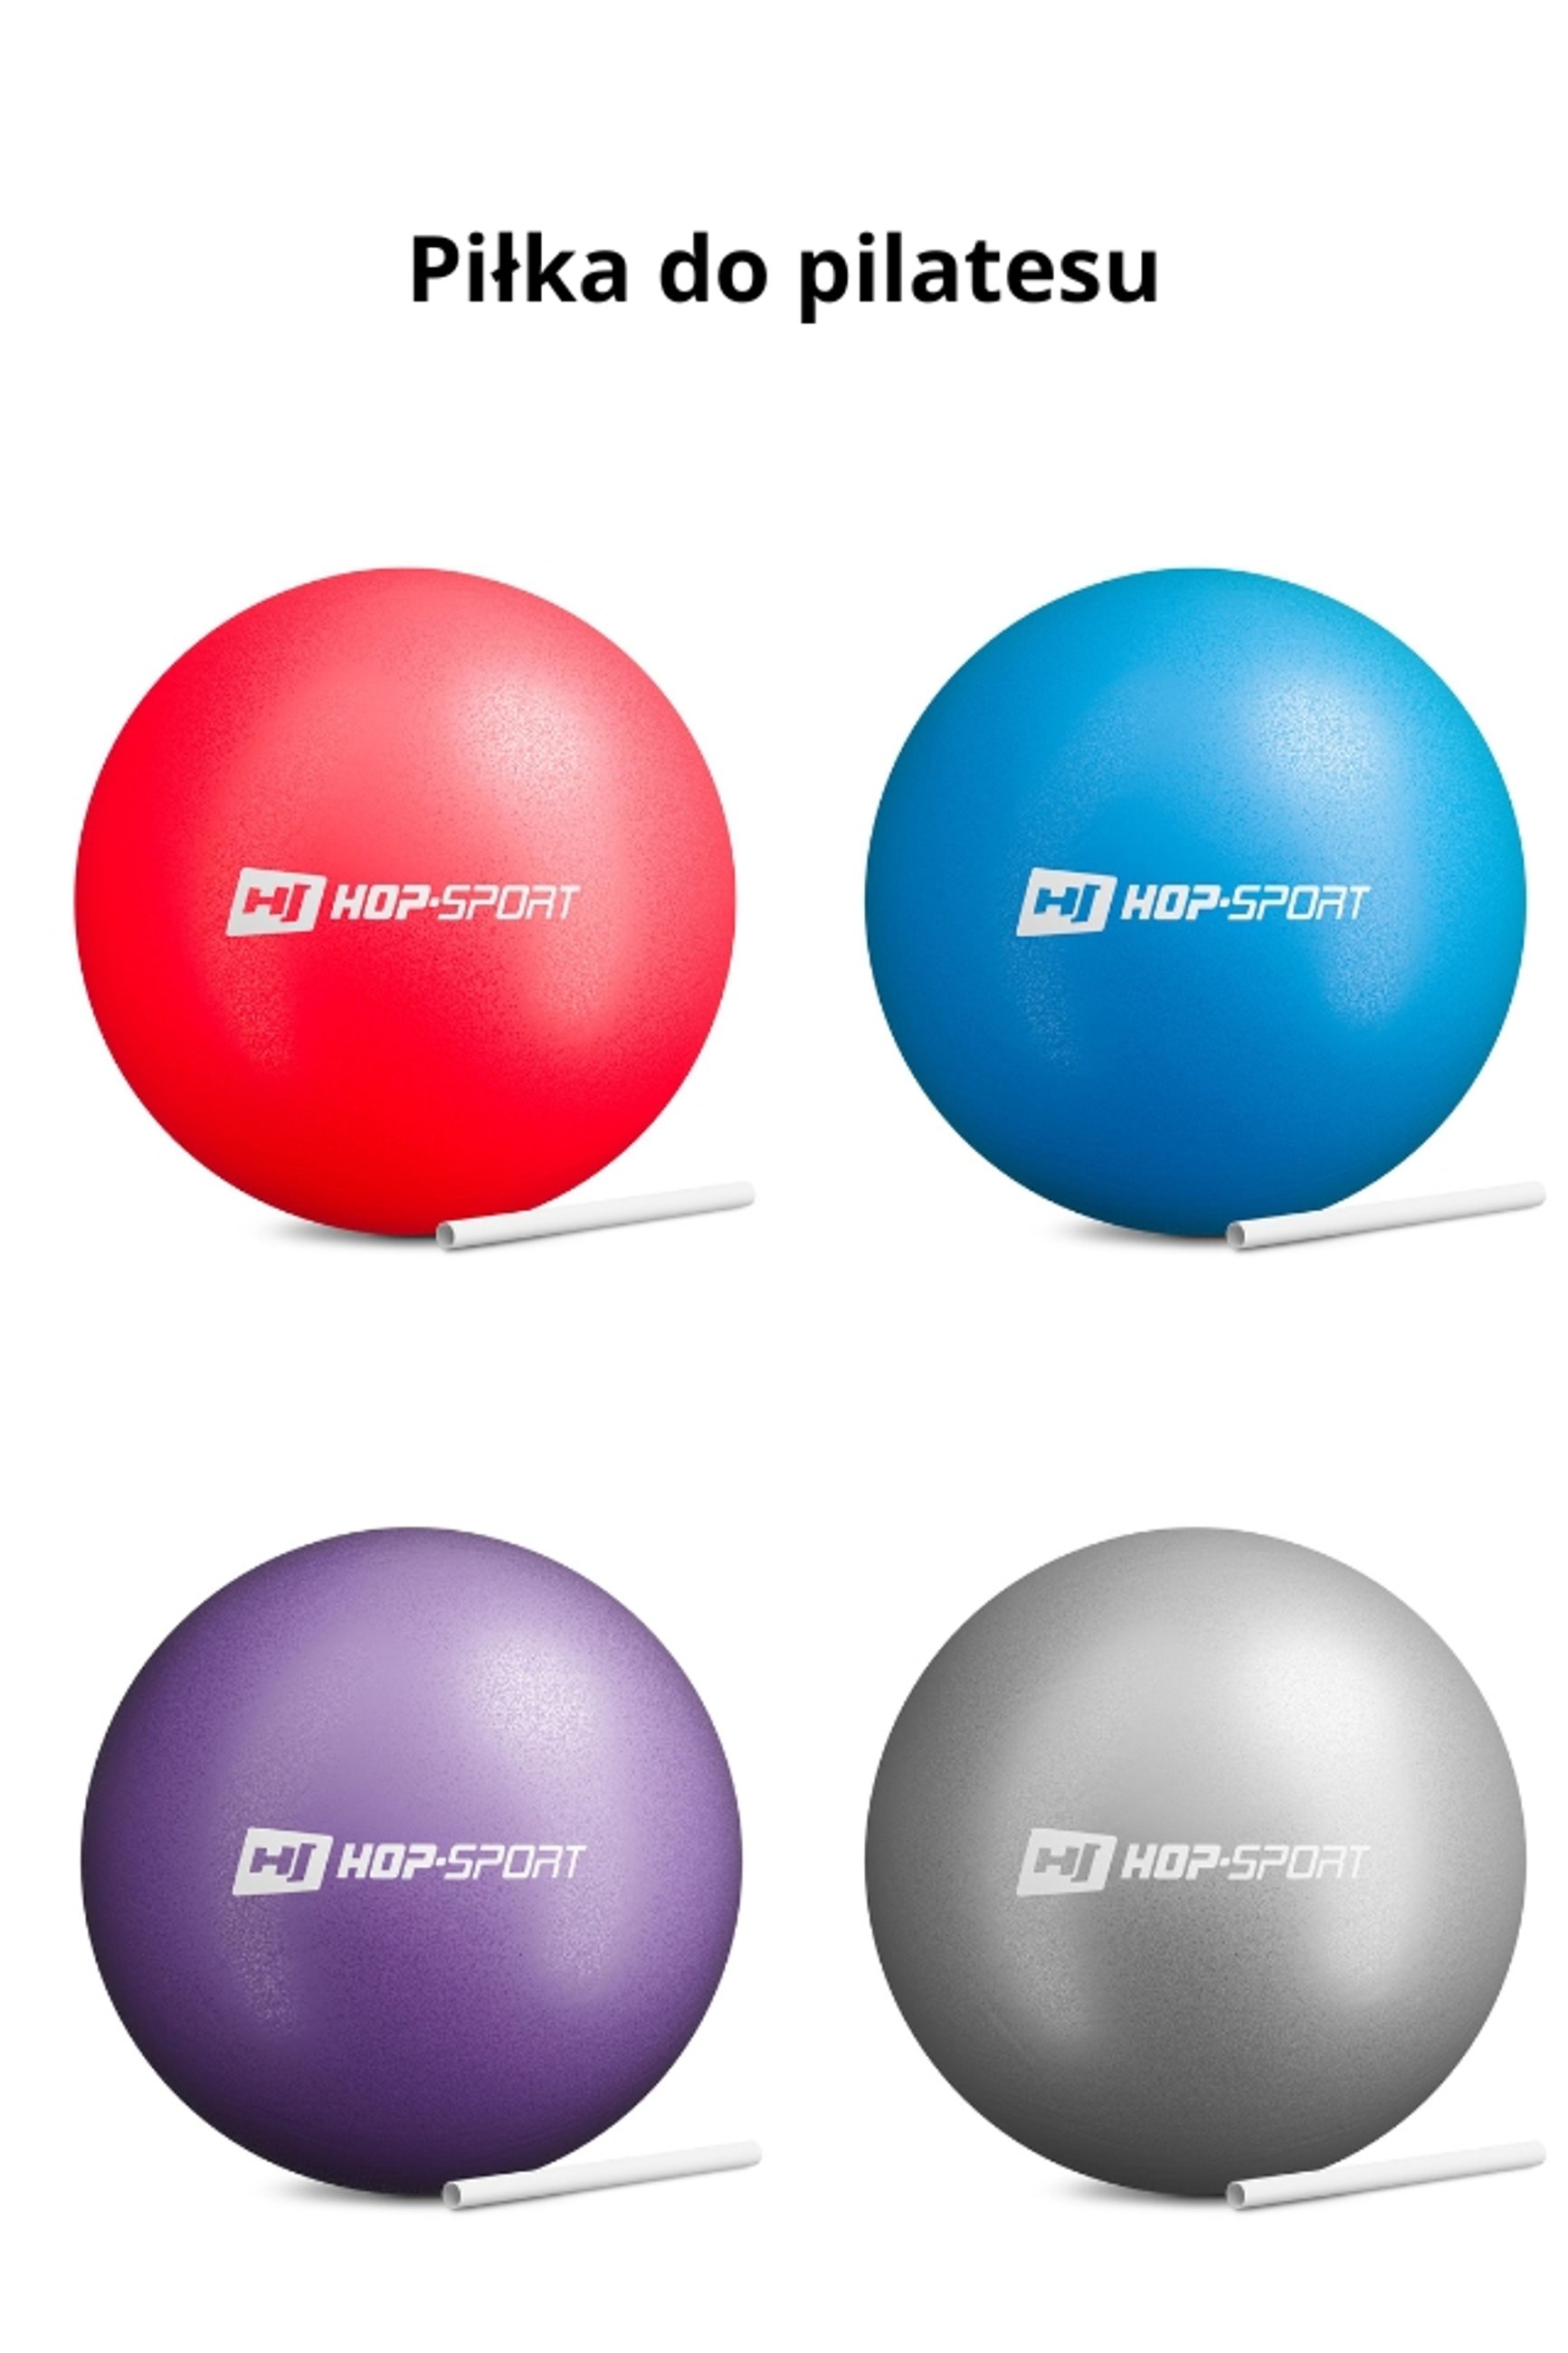 piłka do pilatesu w 4 kolorach marki Hop-Sport